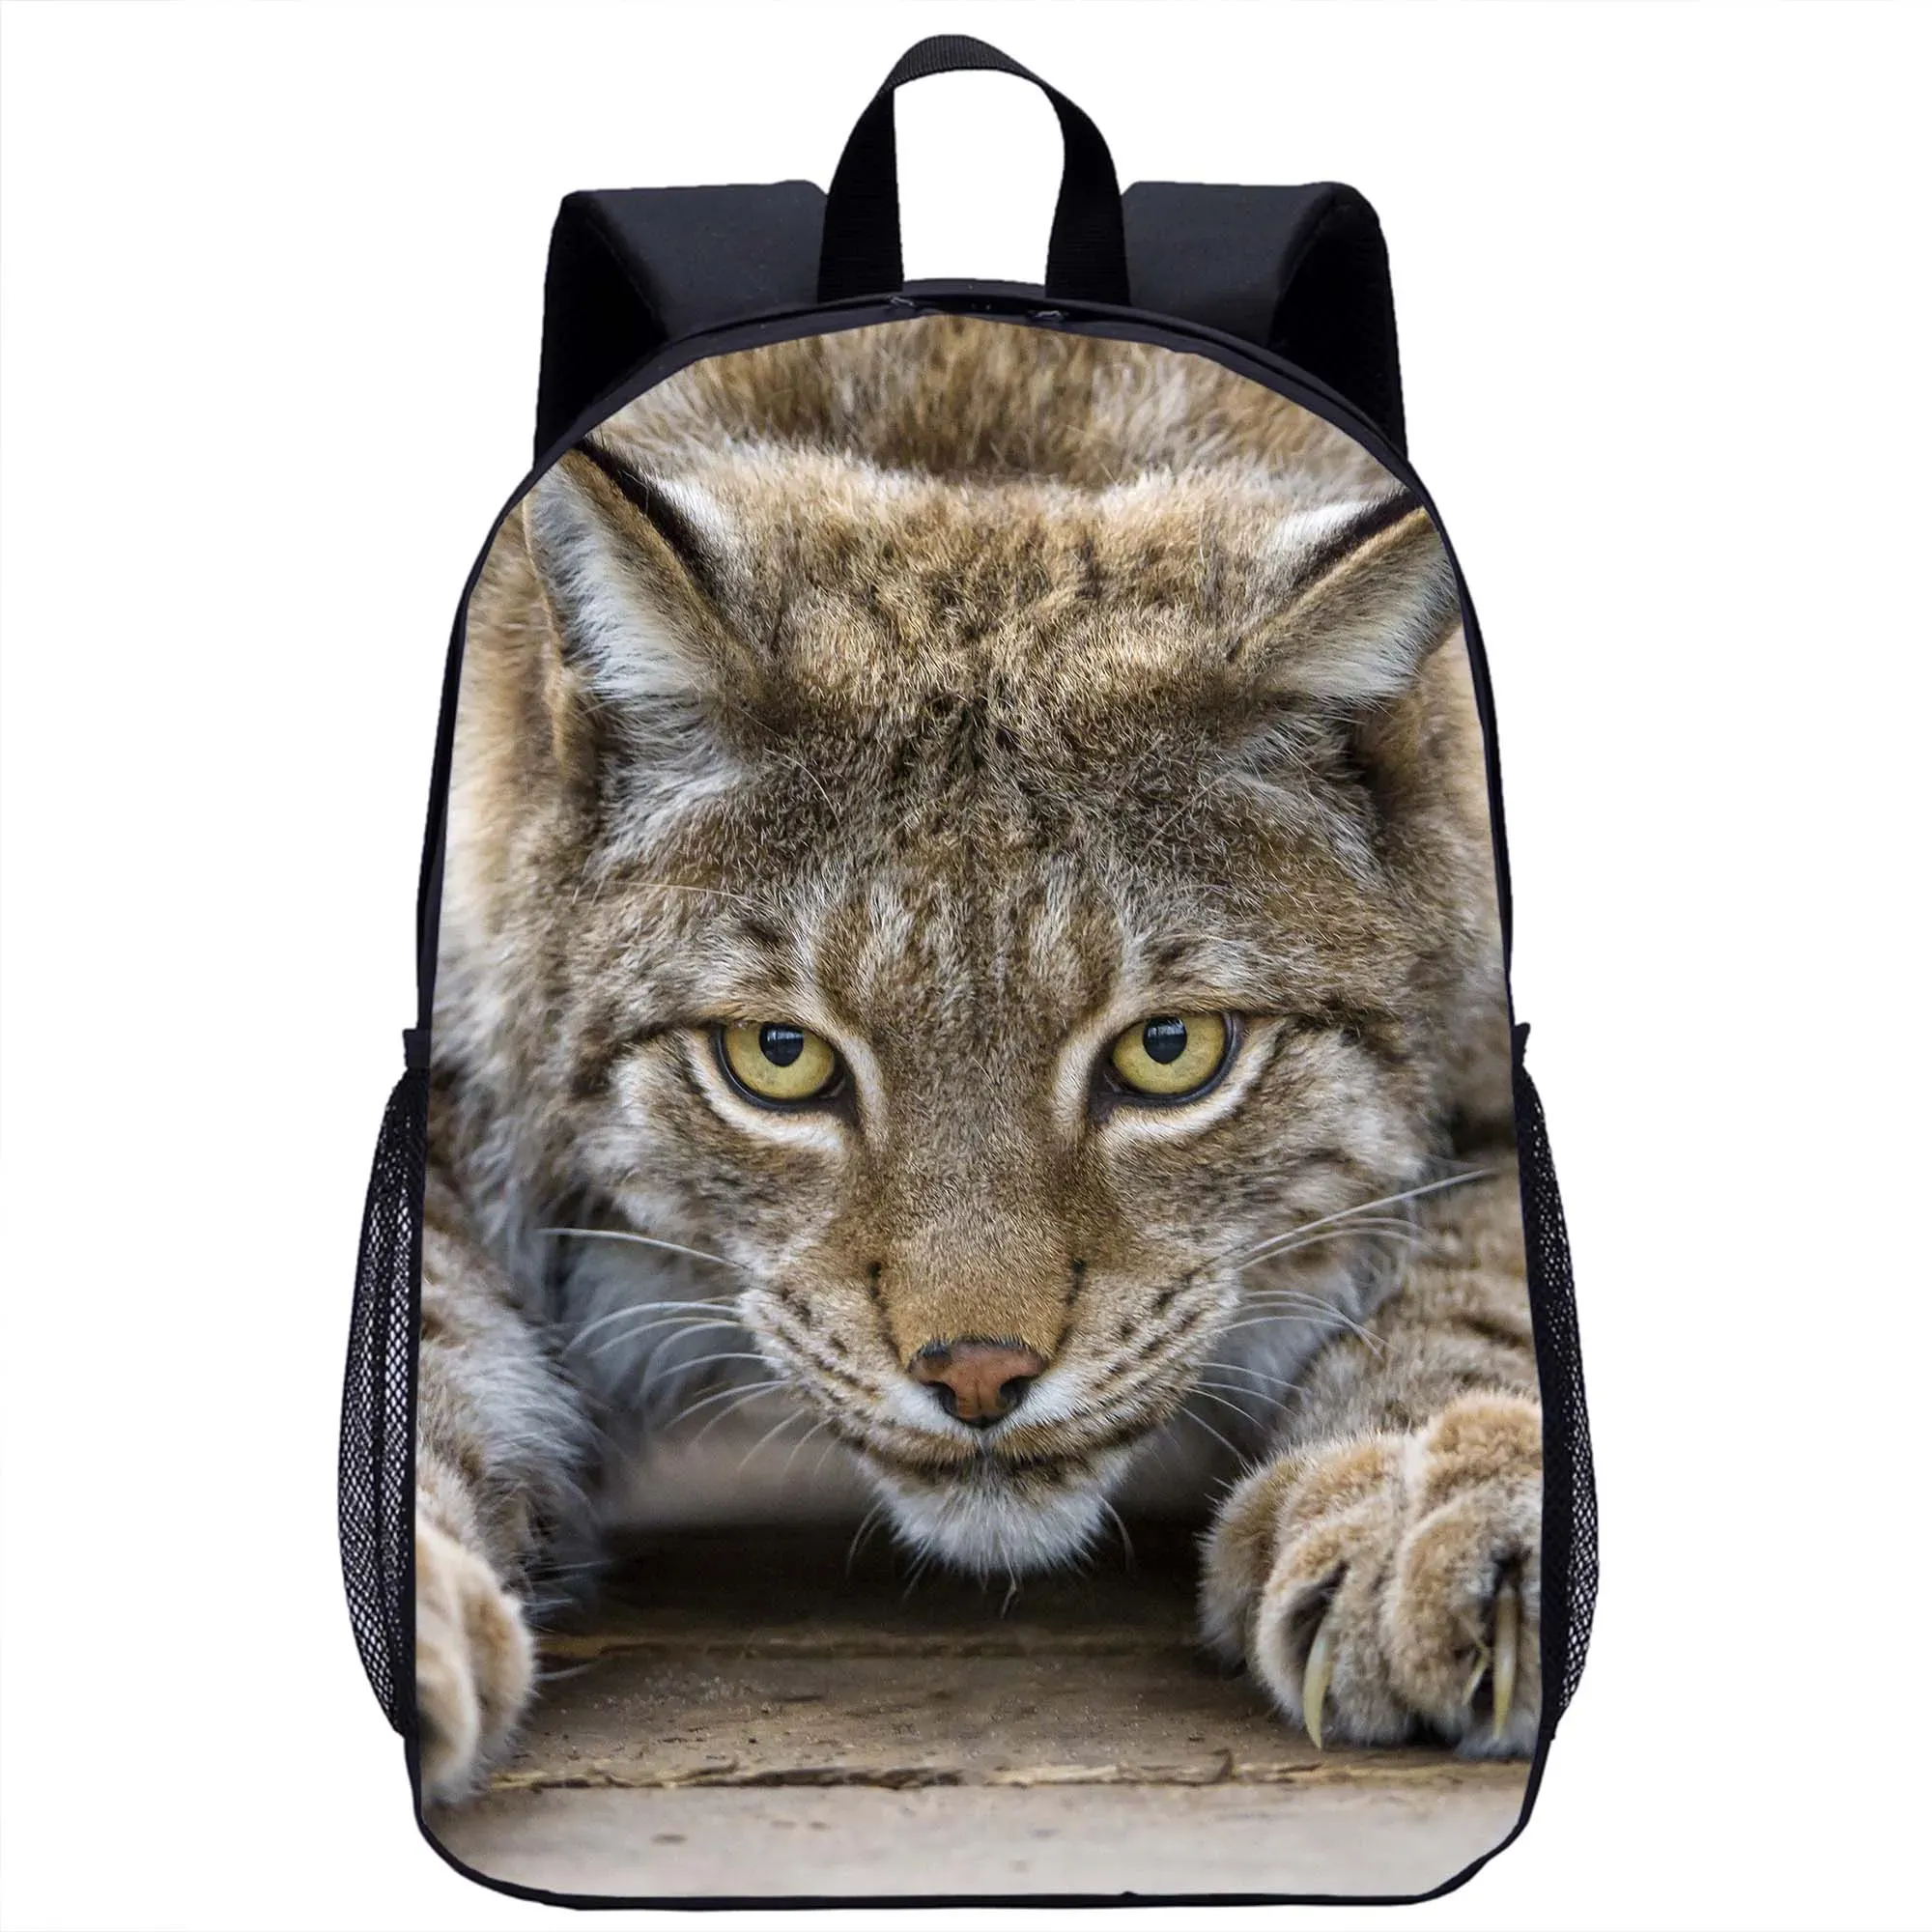 Backpack Lynx Backpack Children's School Backpack Animal 3D Print Teenager Travel Laptop Bag 17in School Season Gift for Girls Boys